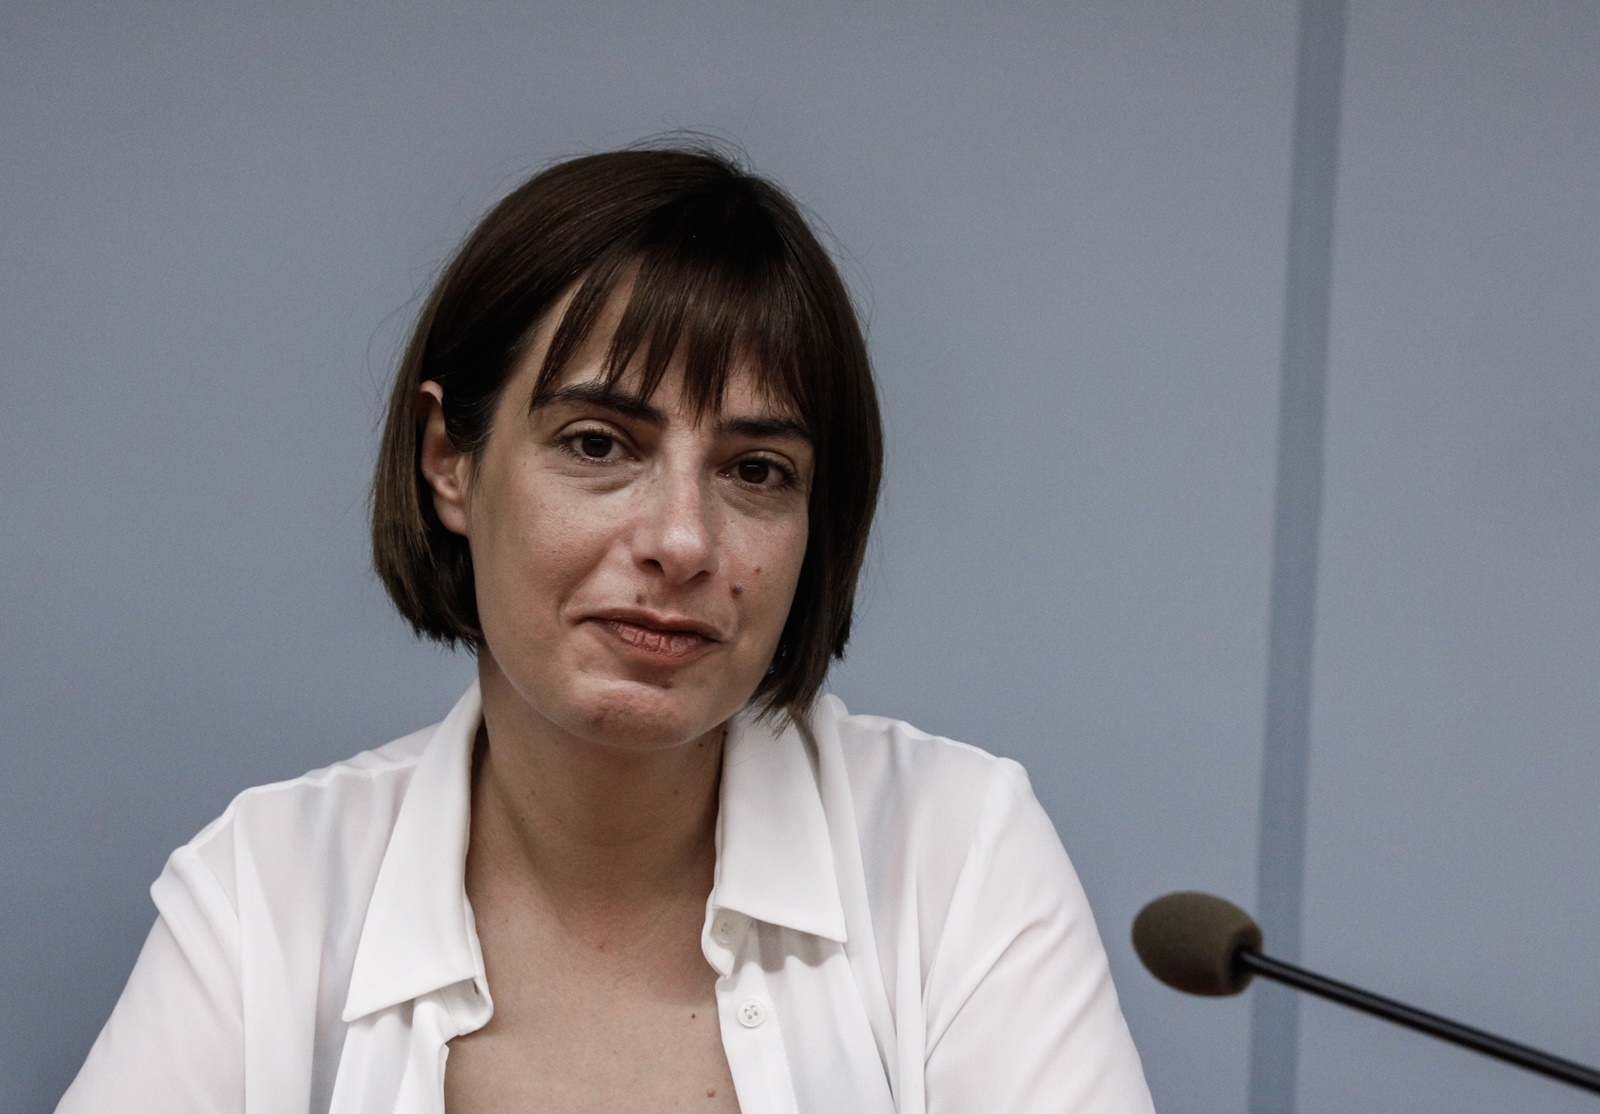 ΣΥΡΙΖΑ, η επόμενη μέρα: Η ανάρτηση της Ράνιας Σβίγκου